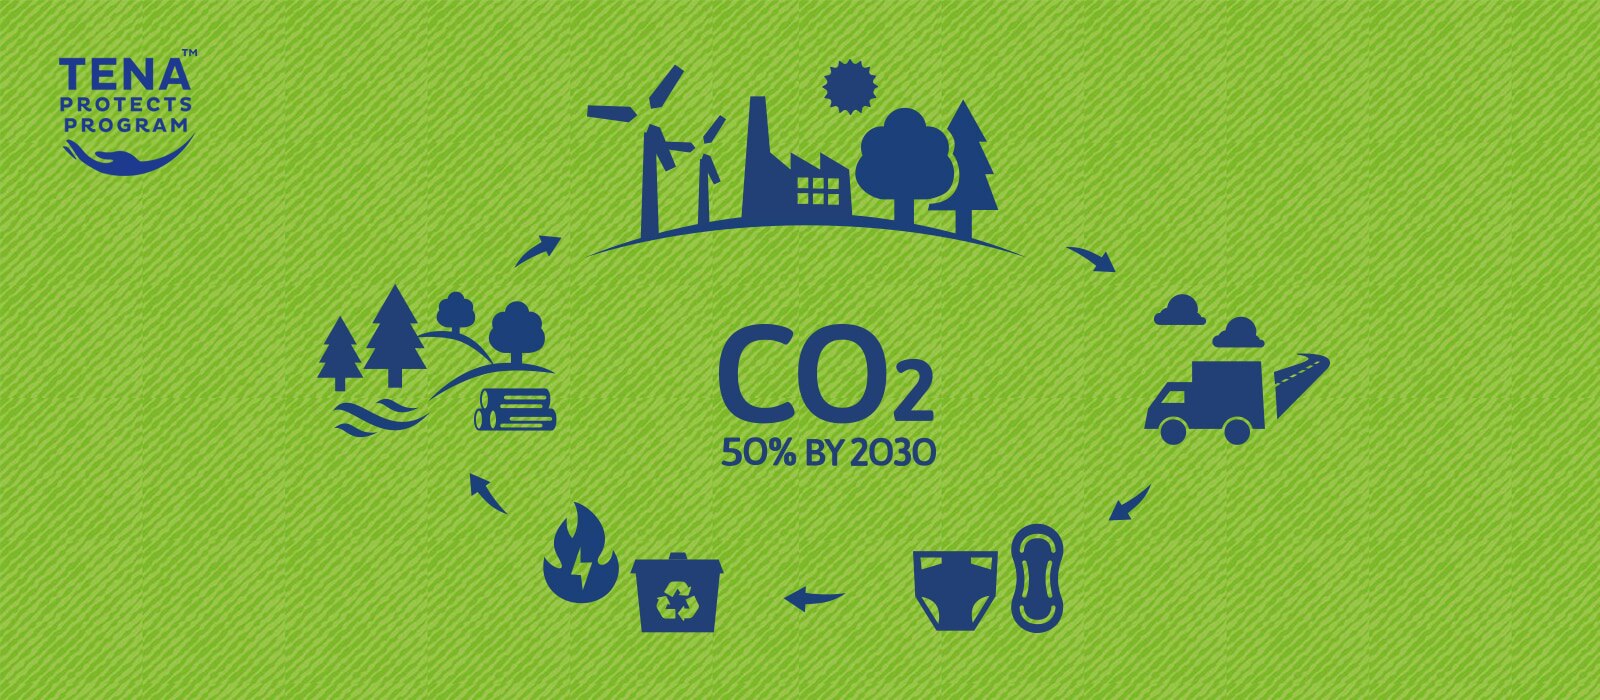 Logo Programma TENA Protects e icone per ogni fase del ciclo di vita del prodotto circondano un testo che recita: "- 50% di CO2 entro il 2030" – TENA